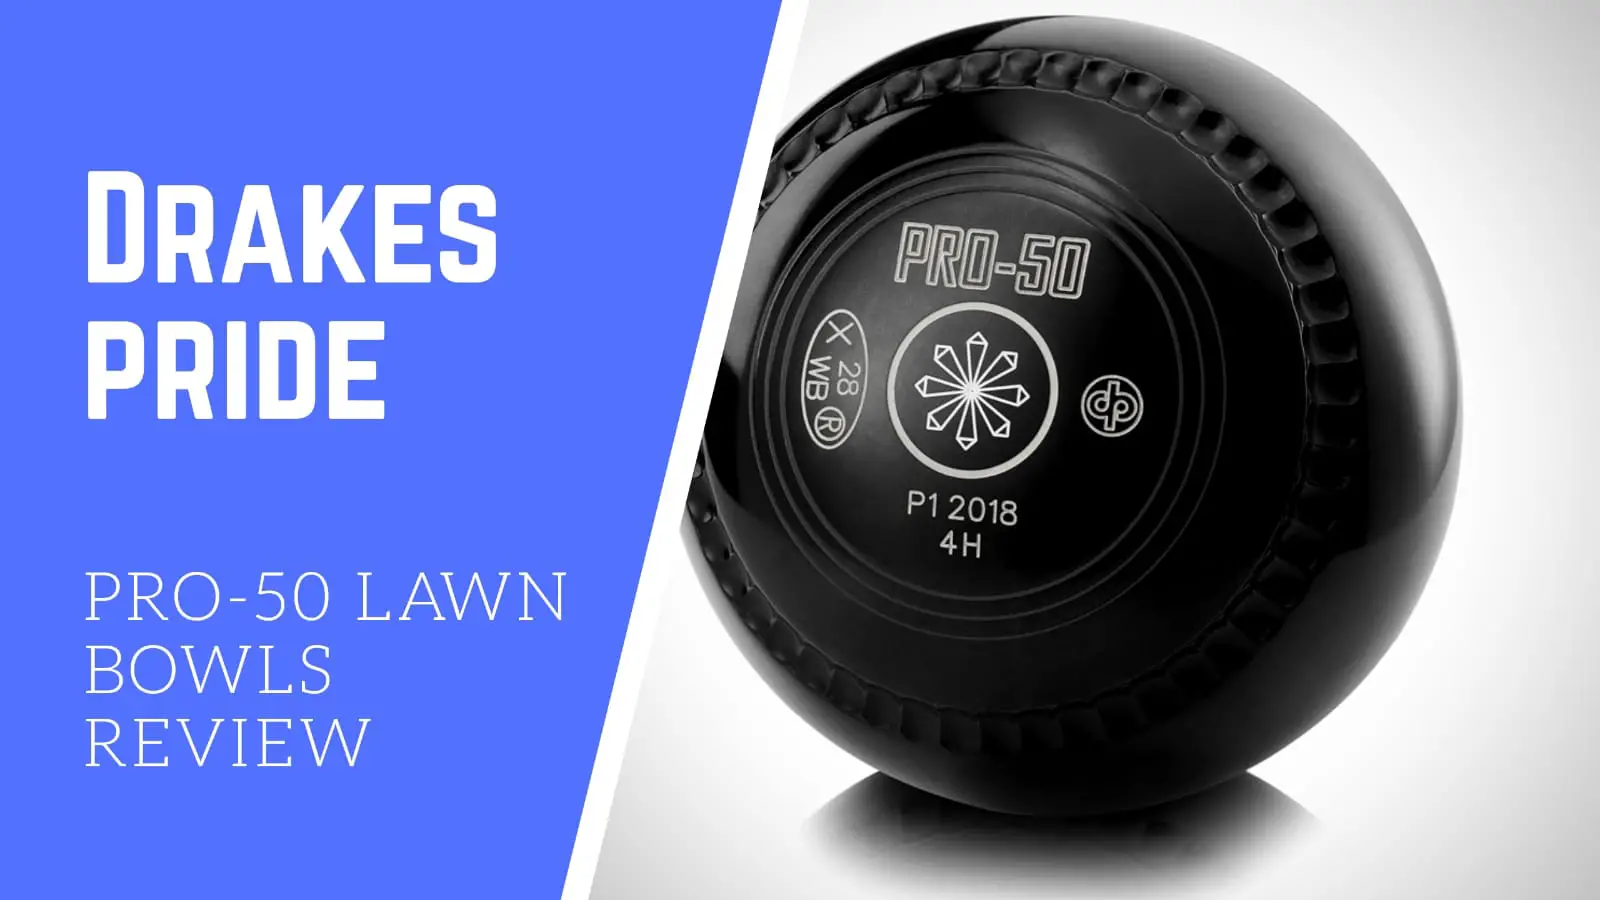 Drakes Pride PRO-50 Lawn Bowls Review